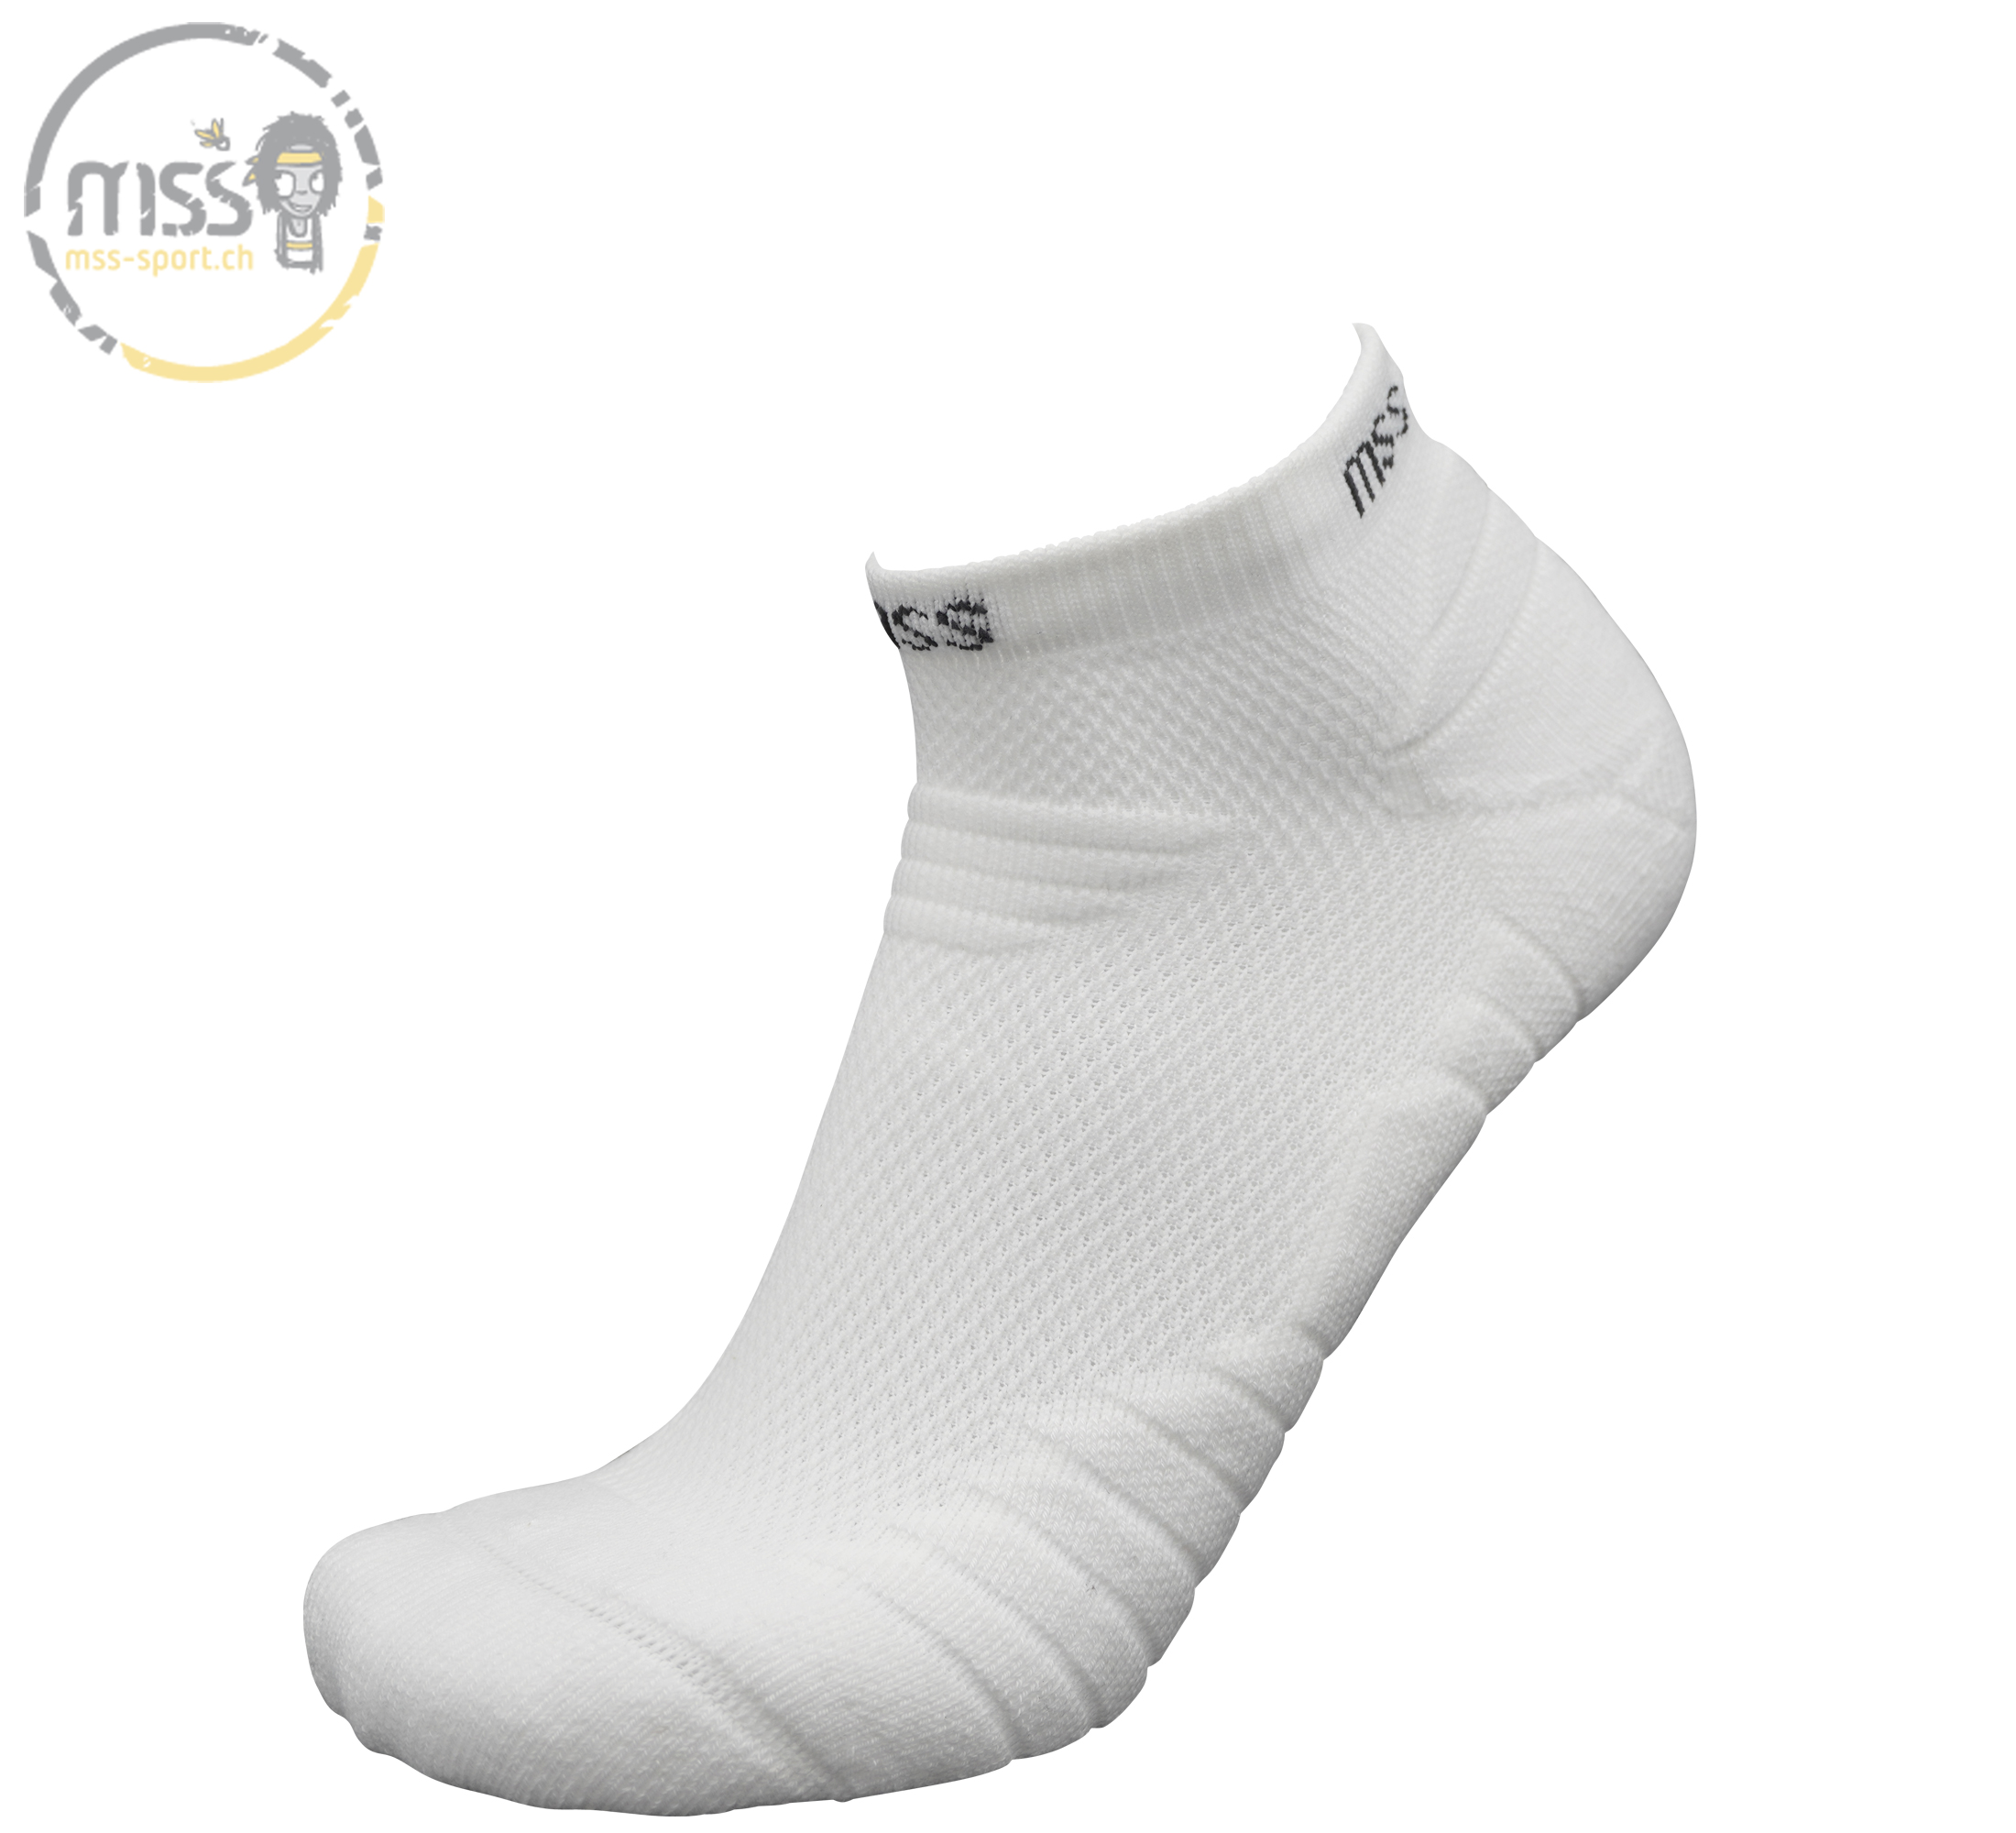 mss-socks Smash 5300 low Lady white